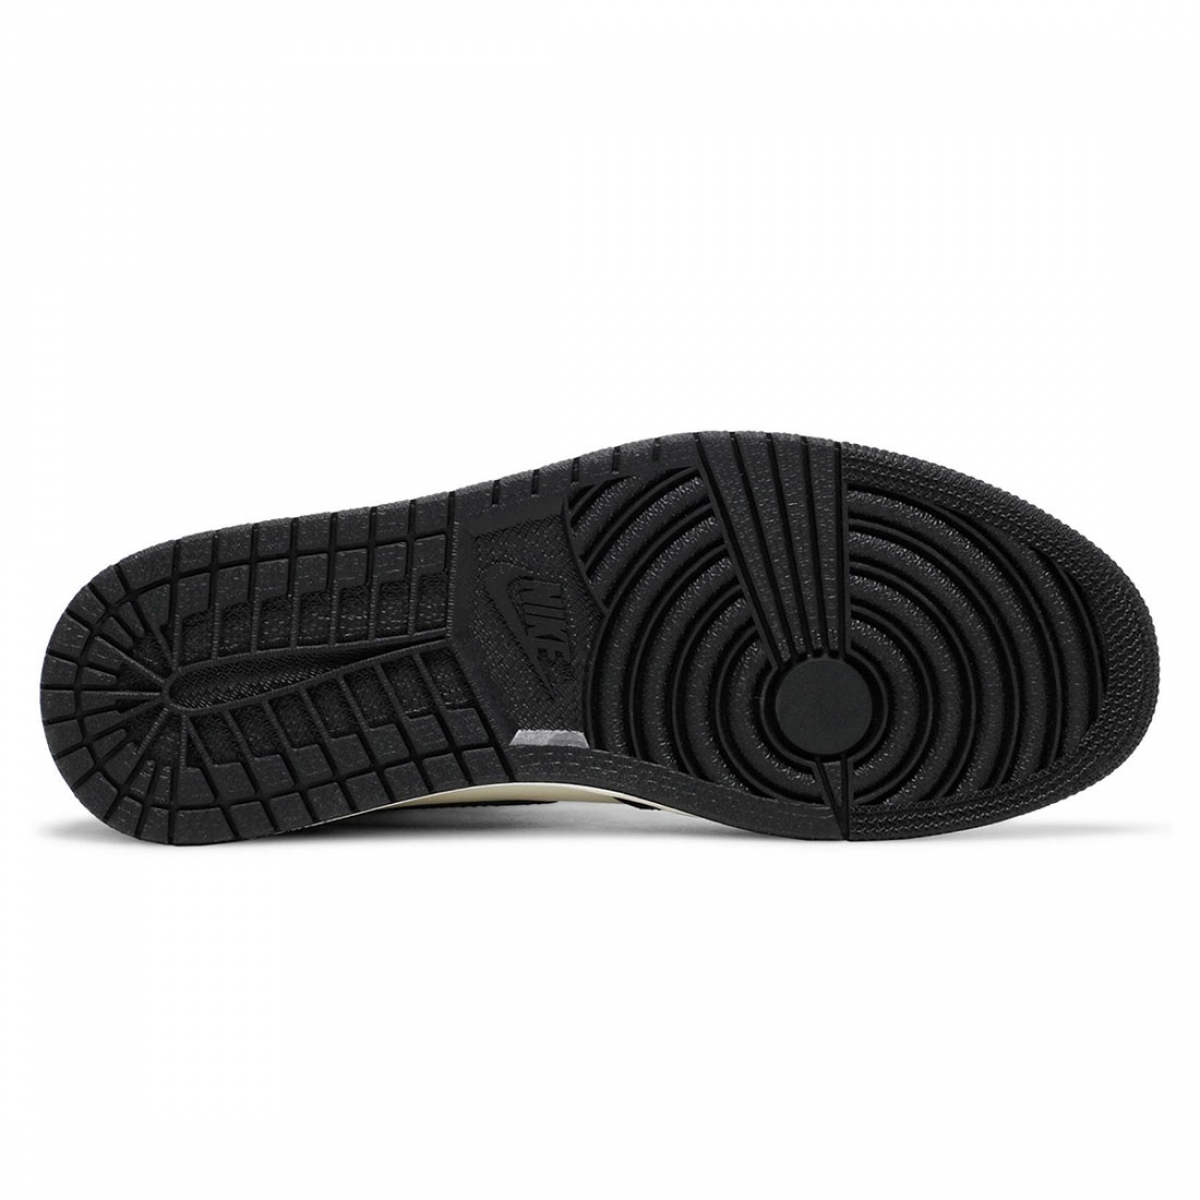 Air Jordan 1 Retro High OG 'Dark Mocha' – PK-Shoes